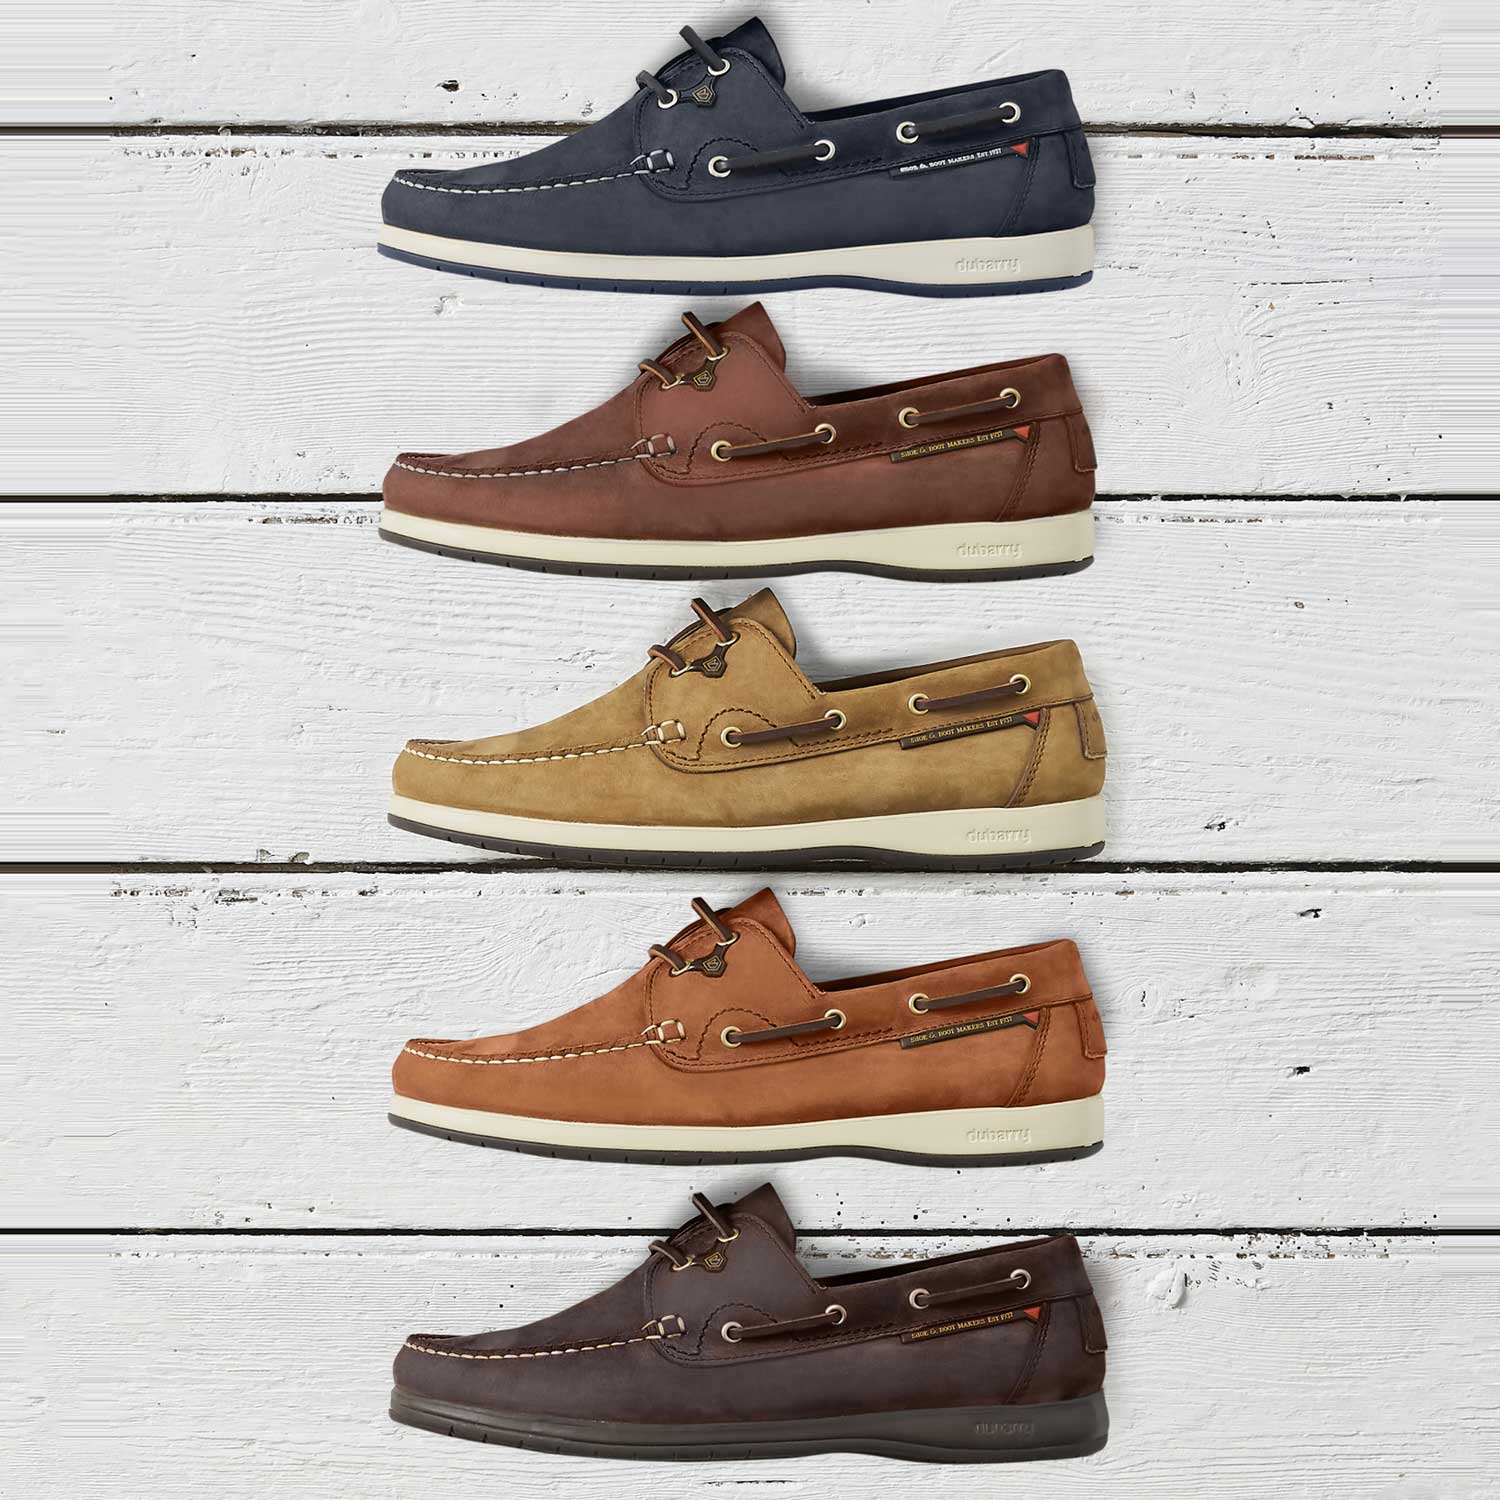 Dubarry Sailmaker X LT Deck Shoes - Men's - 5 Colour Options